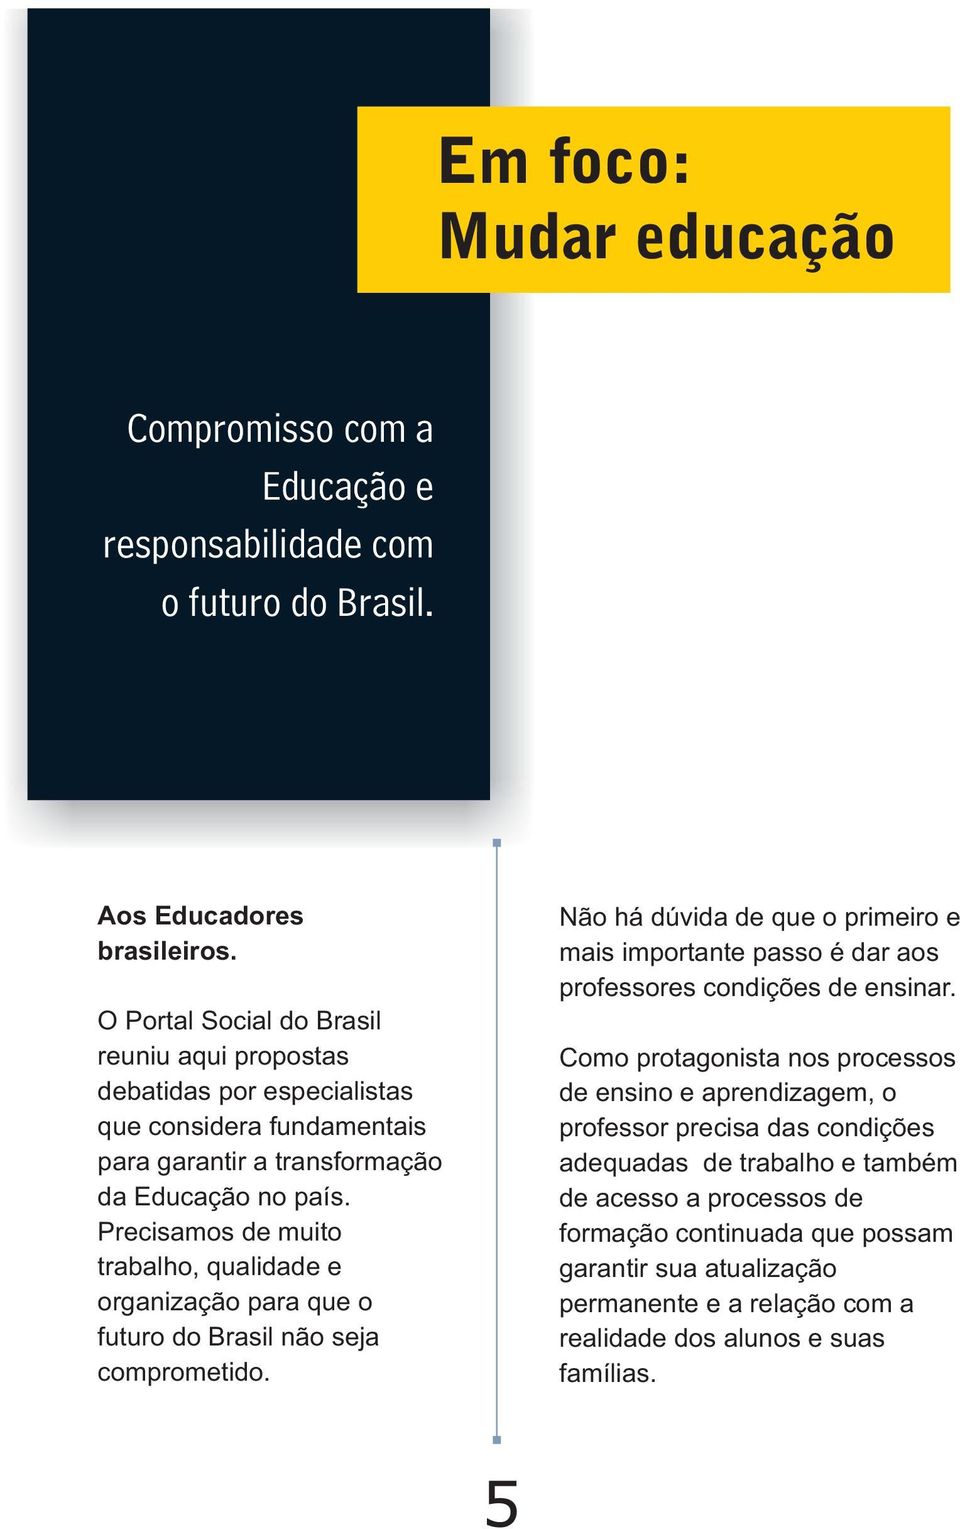 Precisamos de muito trabalho, qualidade e organização para que o futuro do Brasil não seja comprometido.